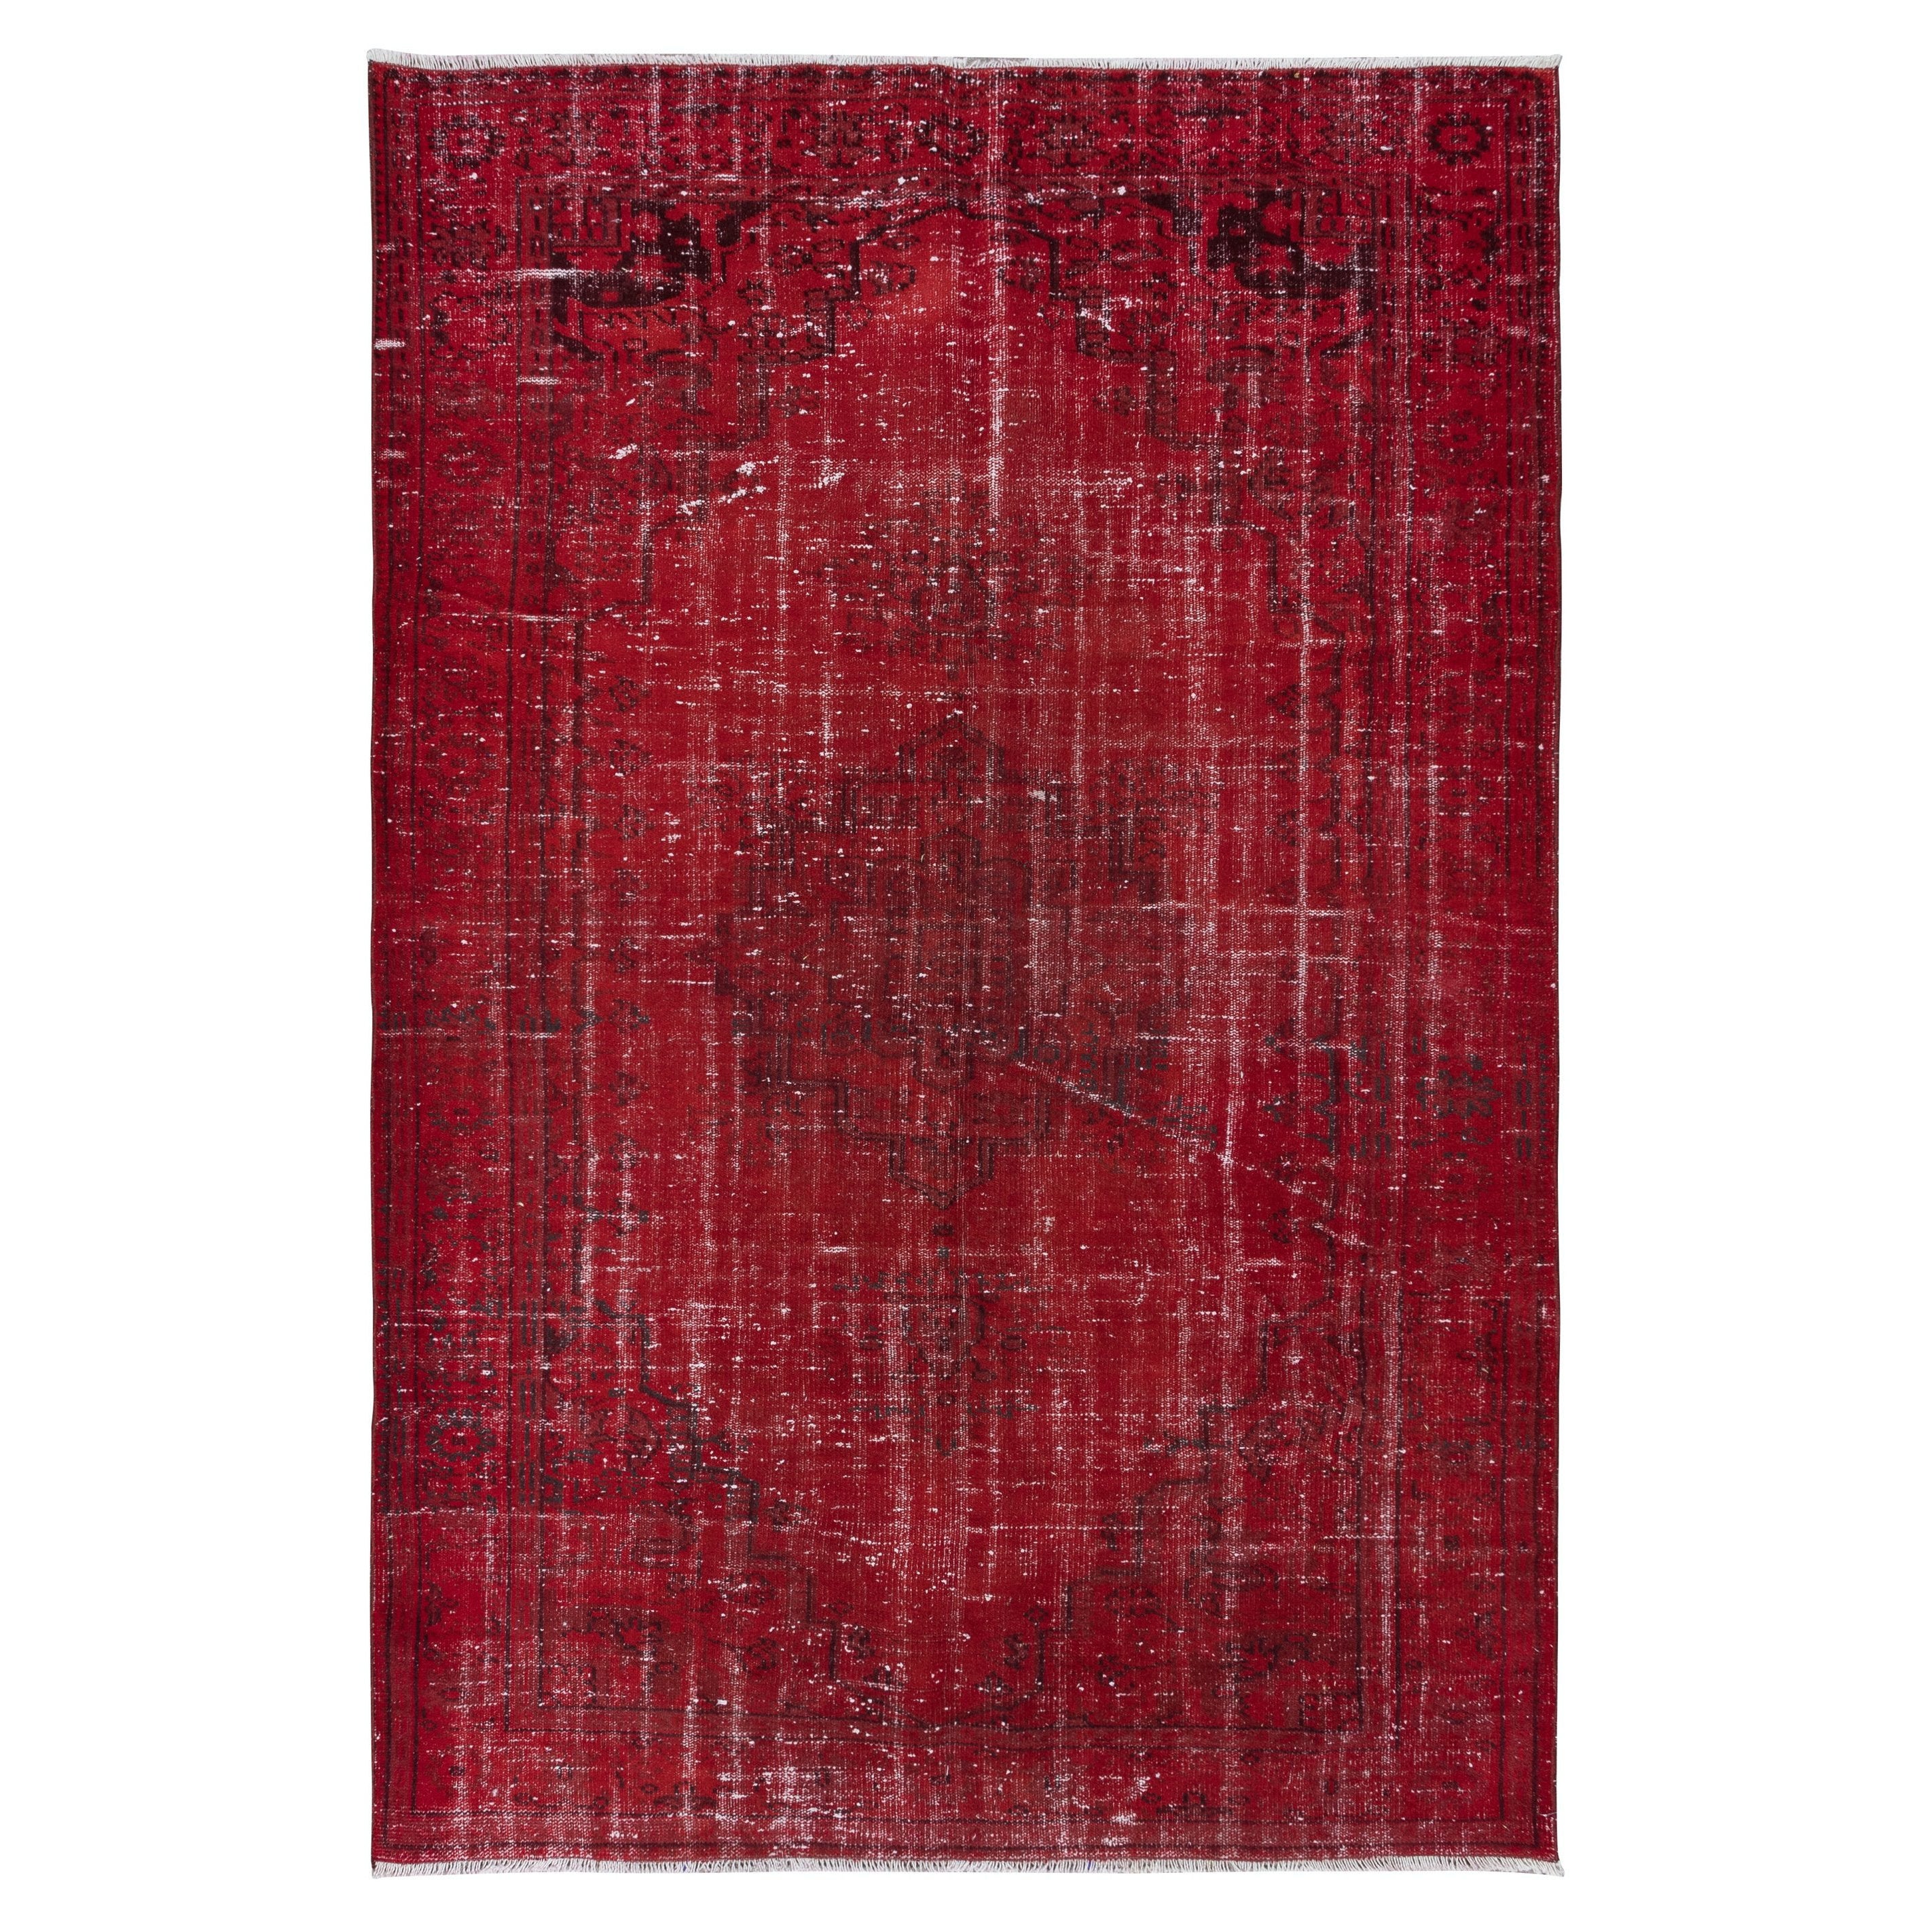 6x9 Ft Dark Red Turkish Area Rug for Living Room, Modern Handmade Carpet